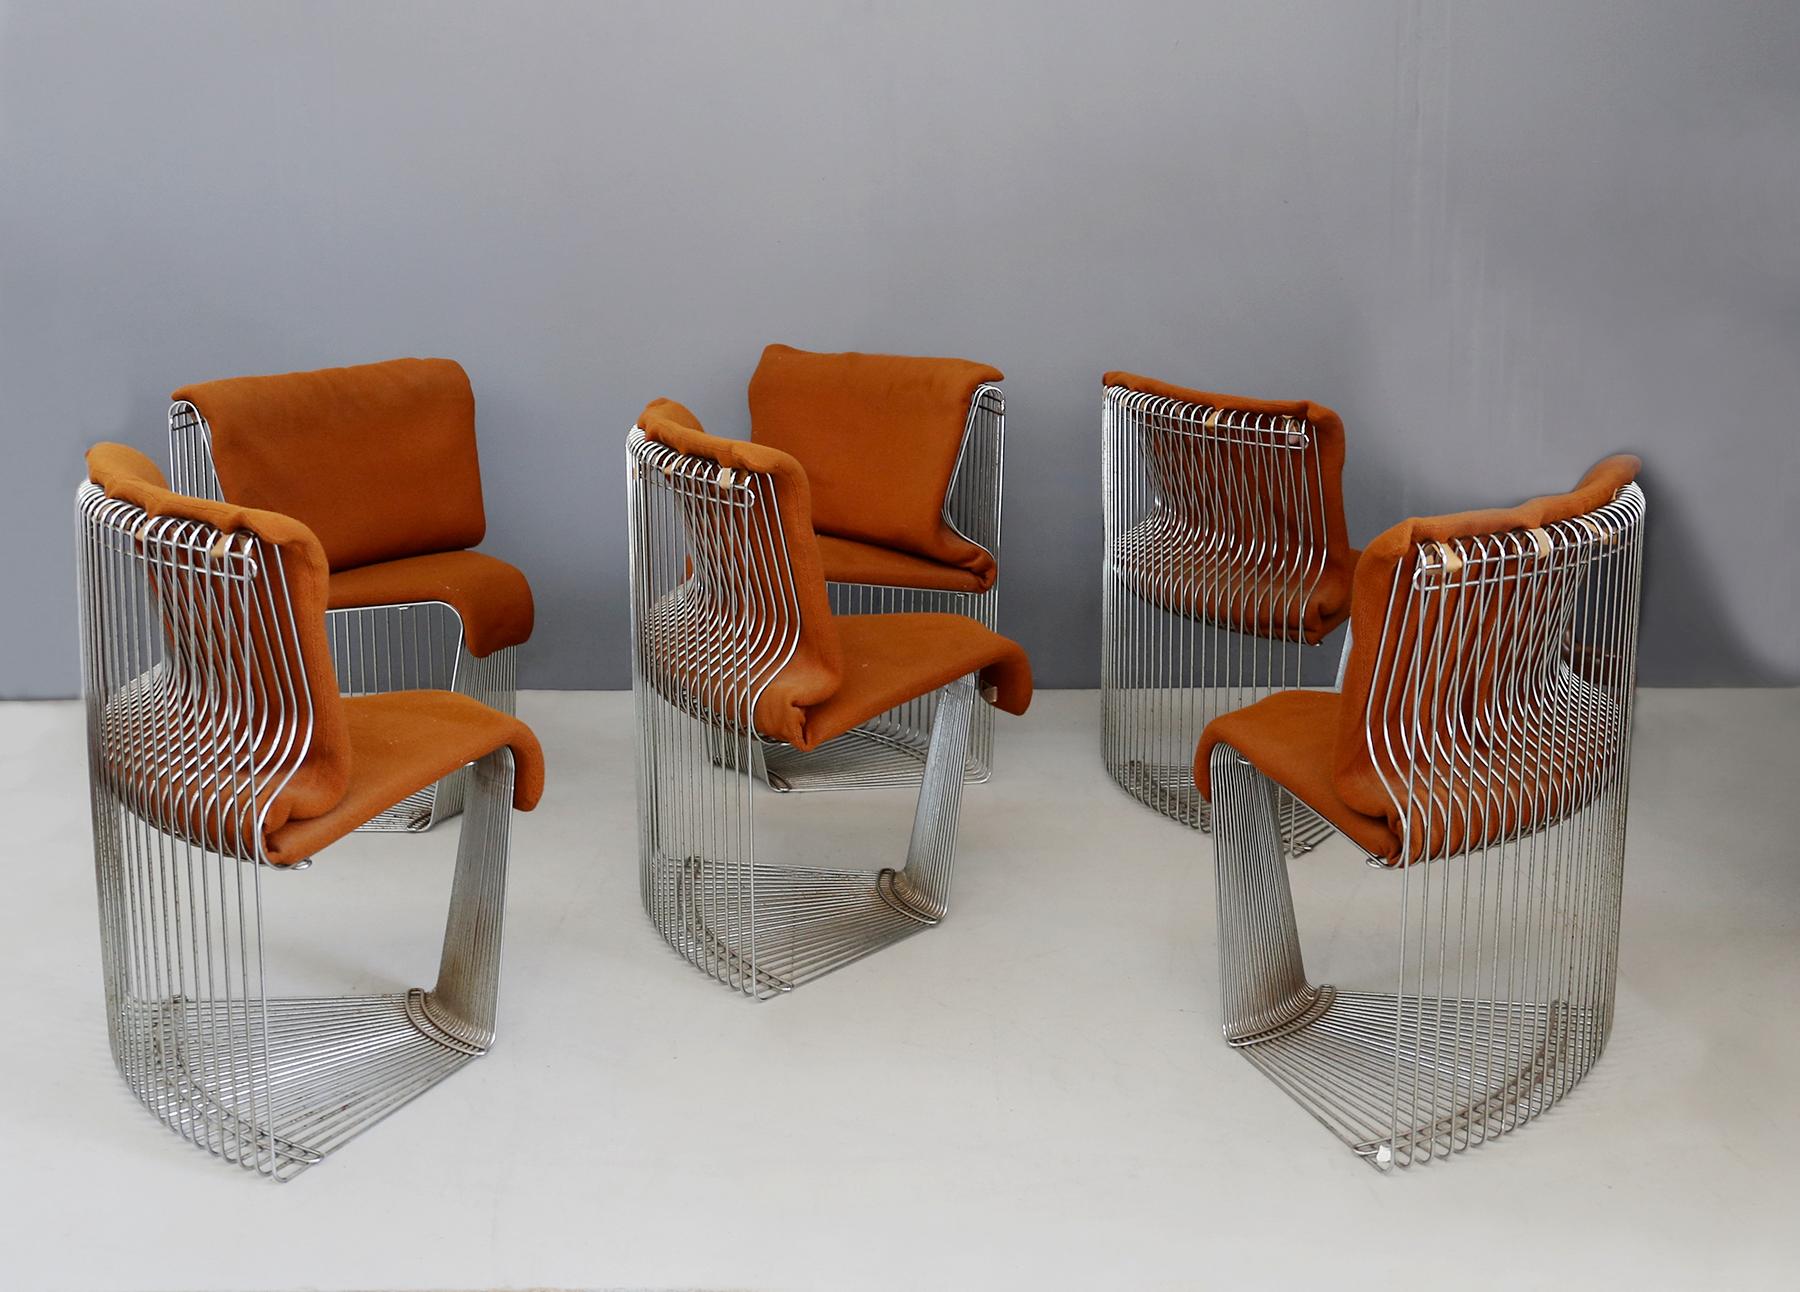 Ensemble complet de 6 chaises et table par Verner Panton série Pantanova pour la manufacture Fritz Hansen de 1971. Les meubles ont été conçus pour le restaurant Varna - Danemark. 
La structure de la table est faite de fils métalliques à barres